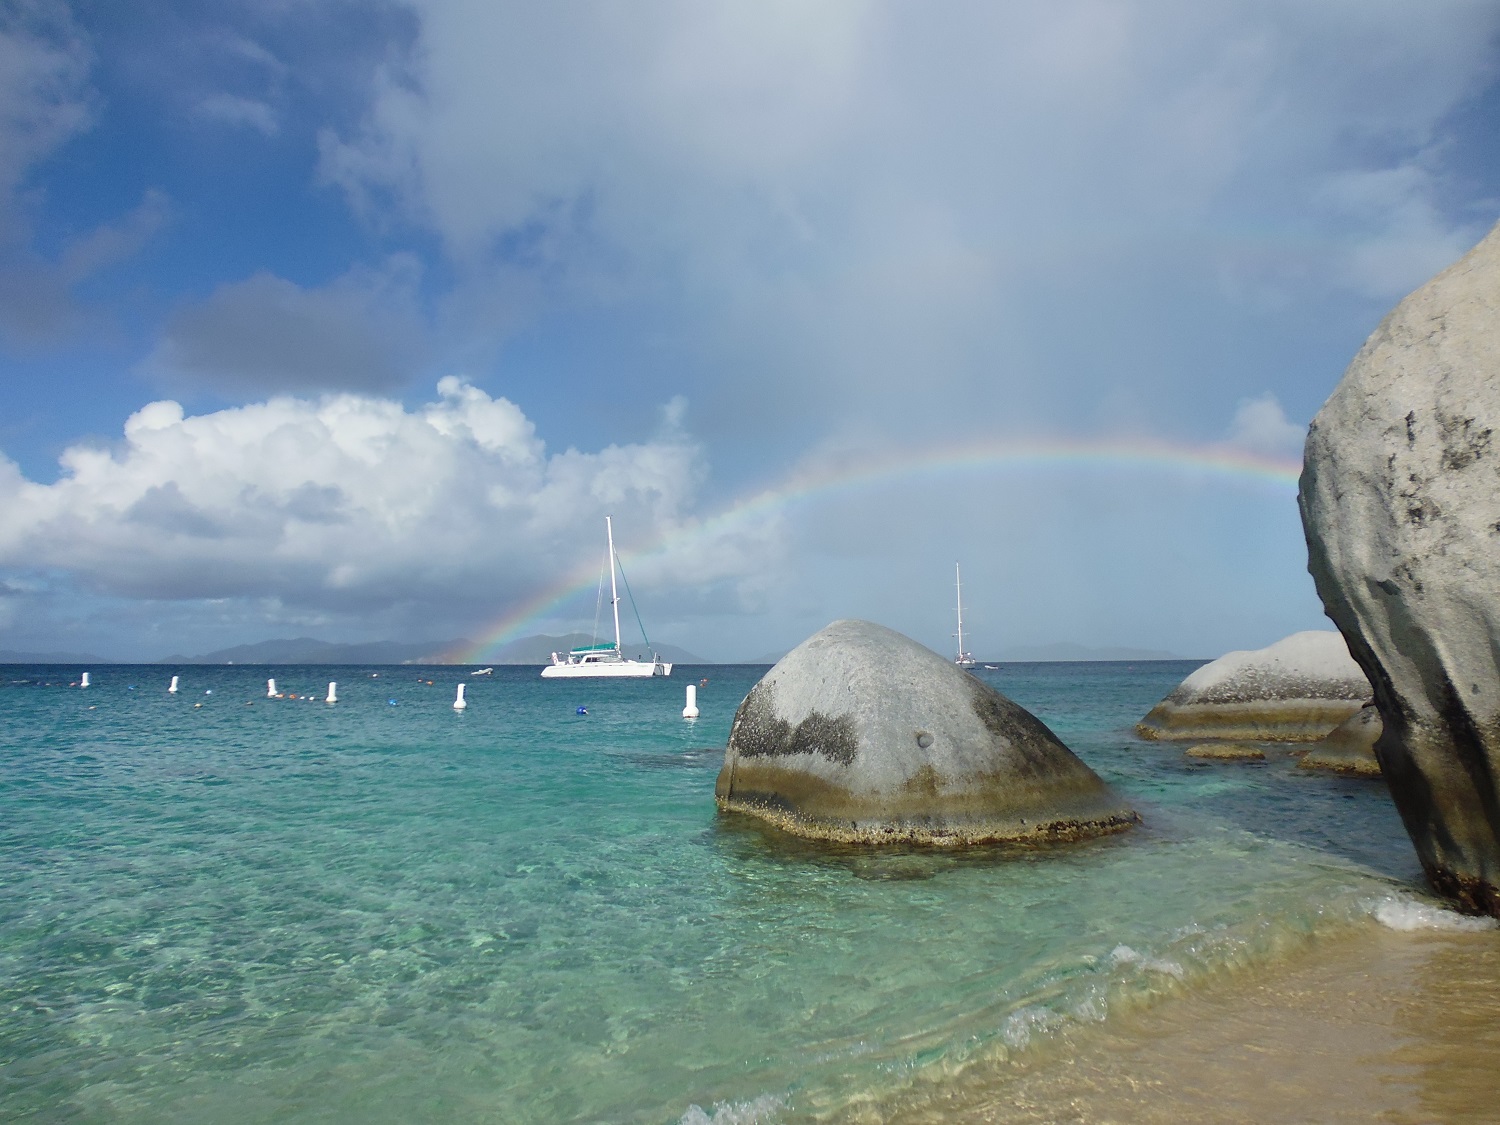 Rainbow in Caribbean